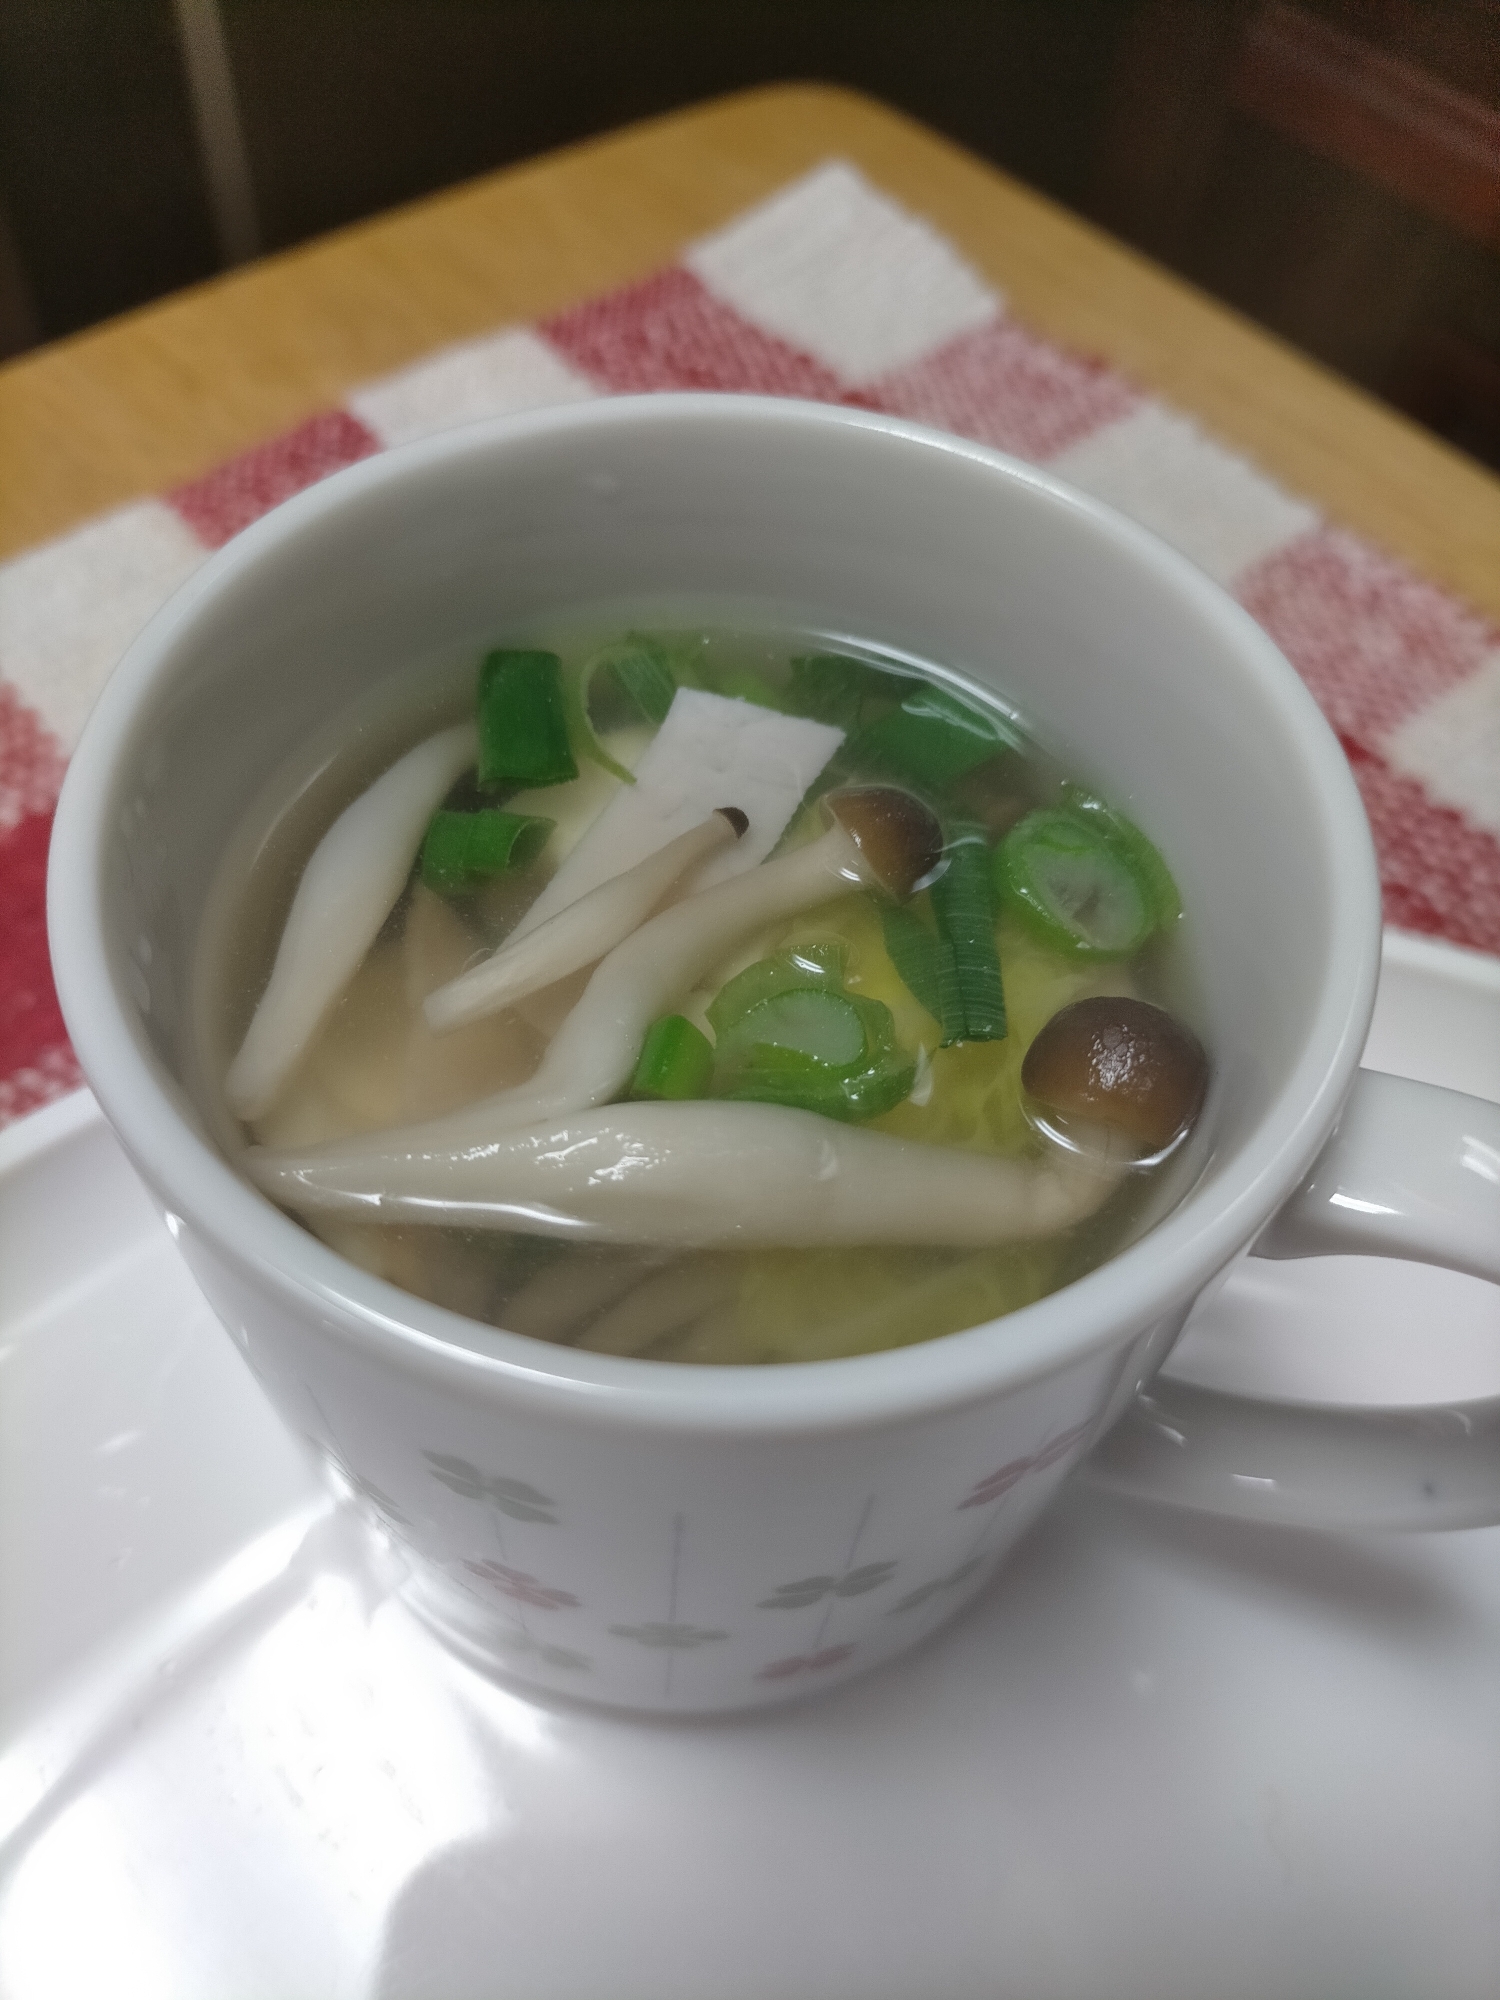 レンジで簡単☆野菜とハム・豆腐の中華スープ♪